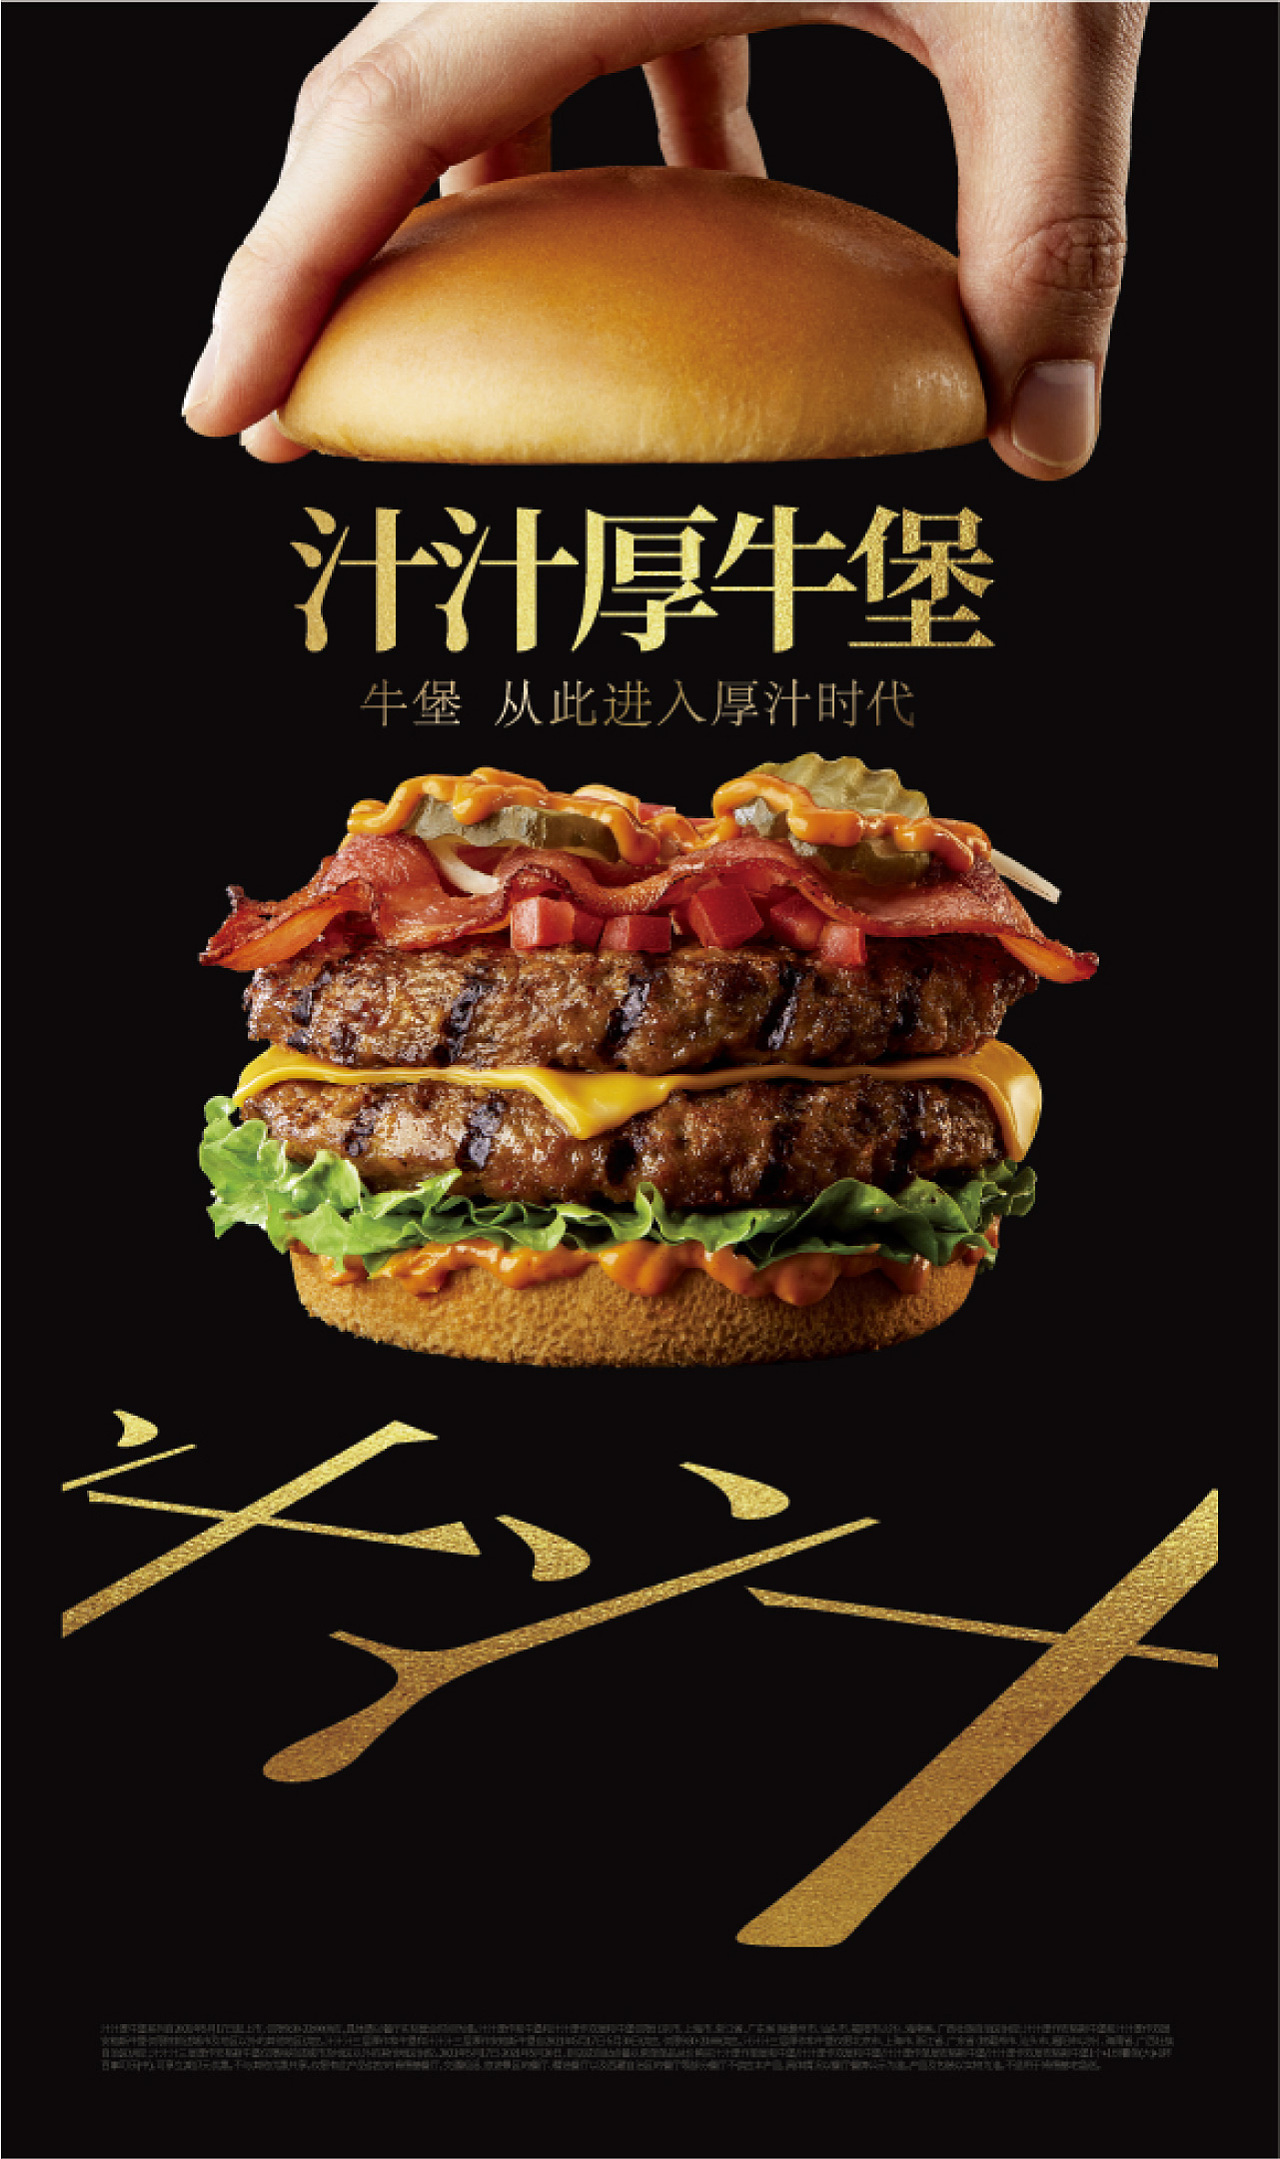 肯德基中国（KFC）推出新品人造肉汉堡——植培牛肉芝士汉堡